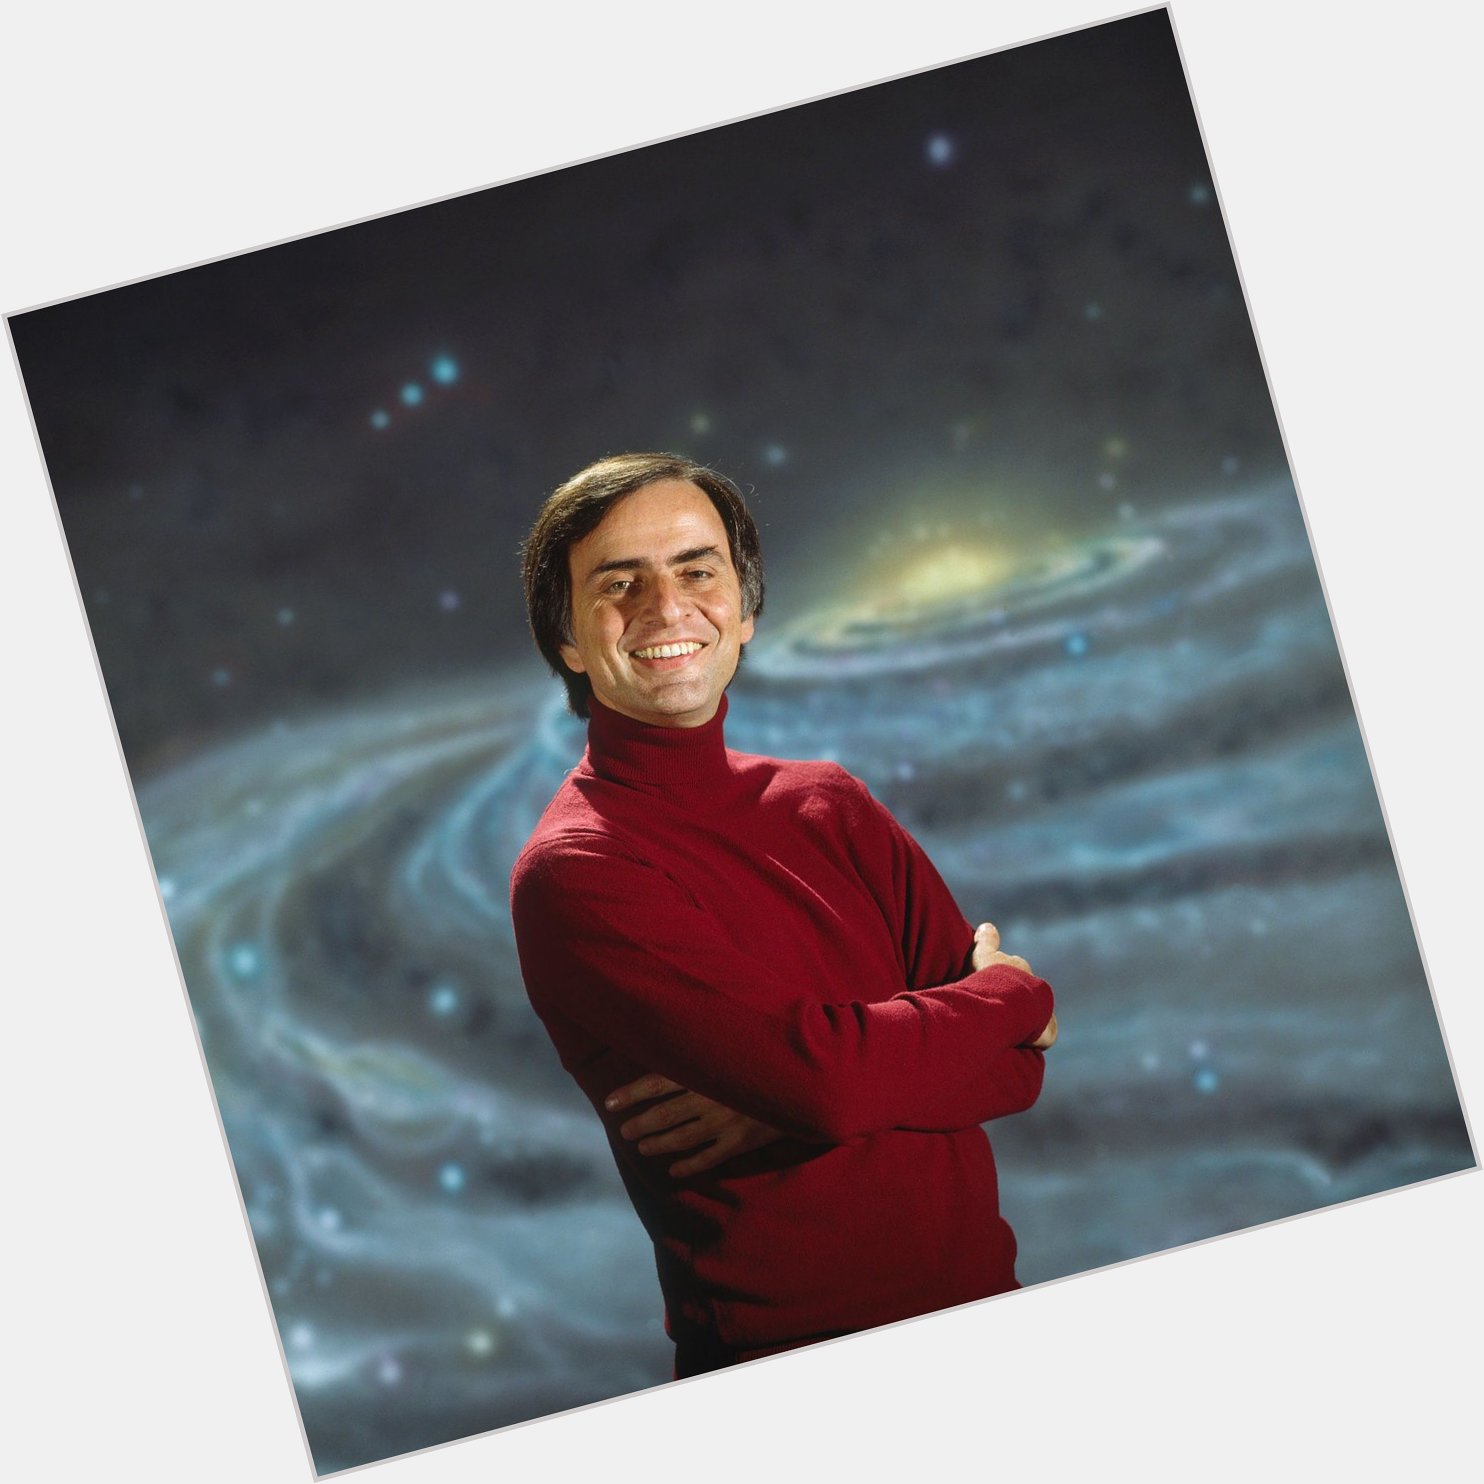 Happy birthday Carl Sagan & RIP, legend 